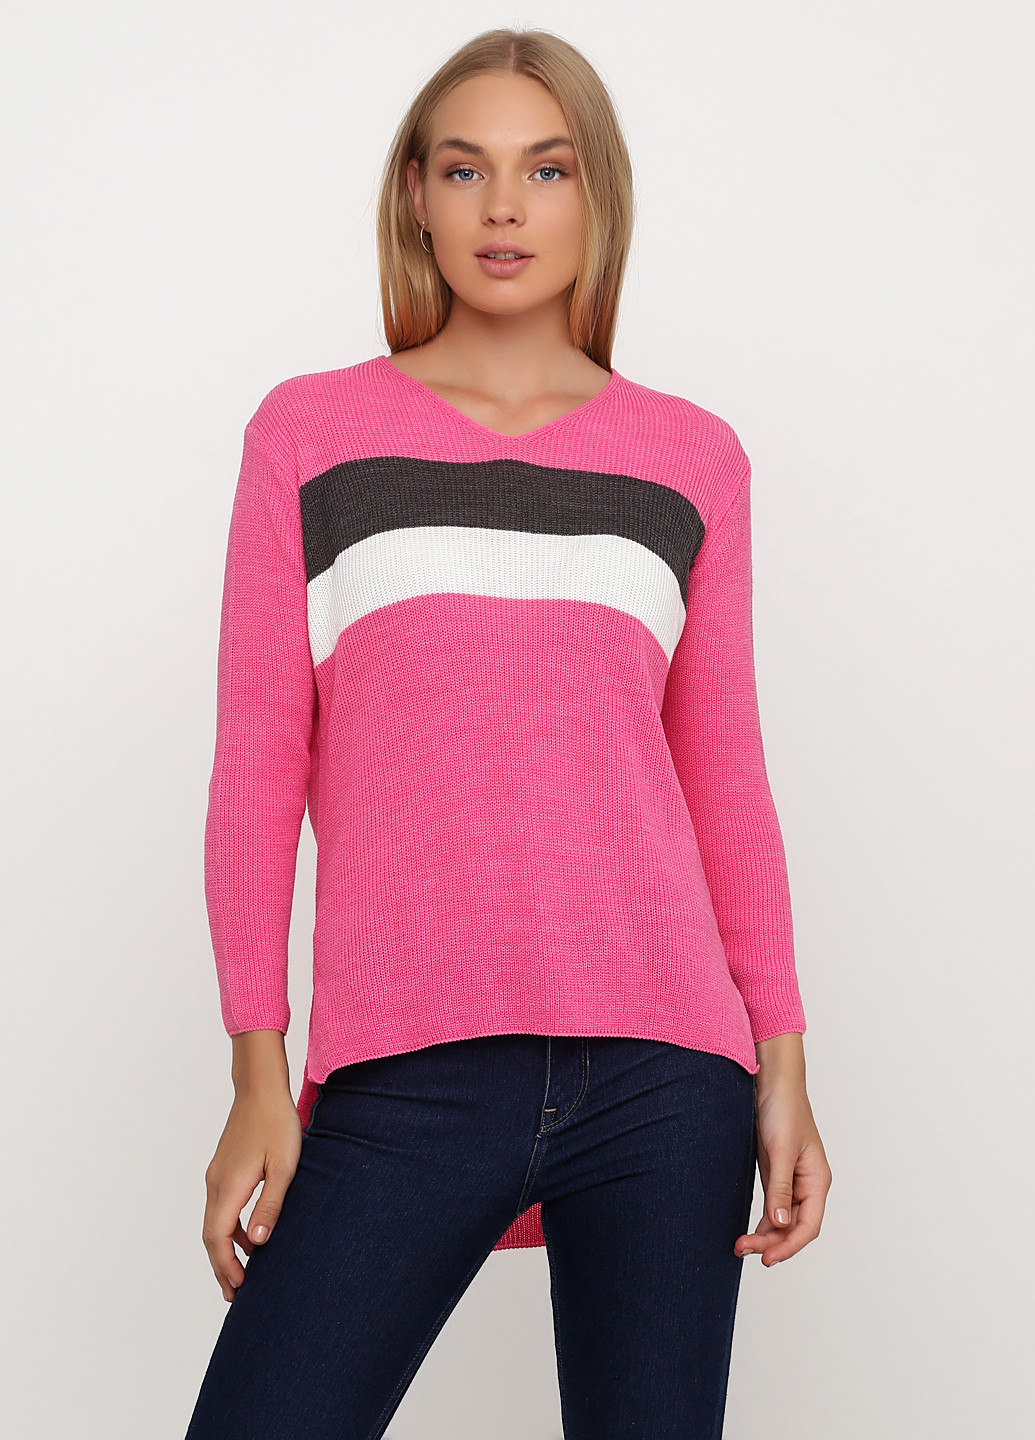 Розовый демисезонный пуловер пуловер Askar Triko